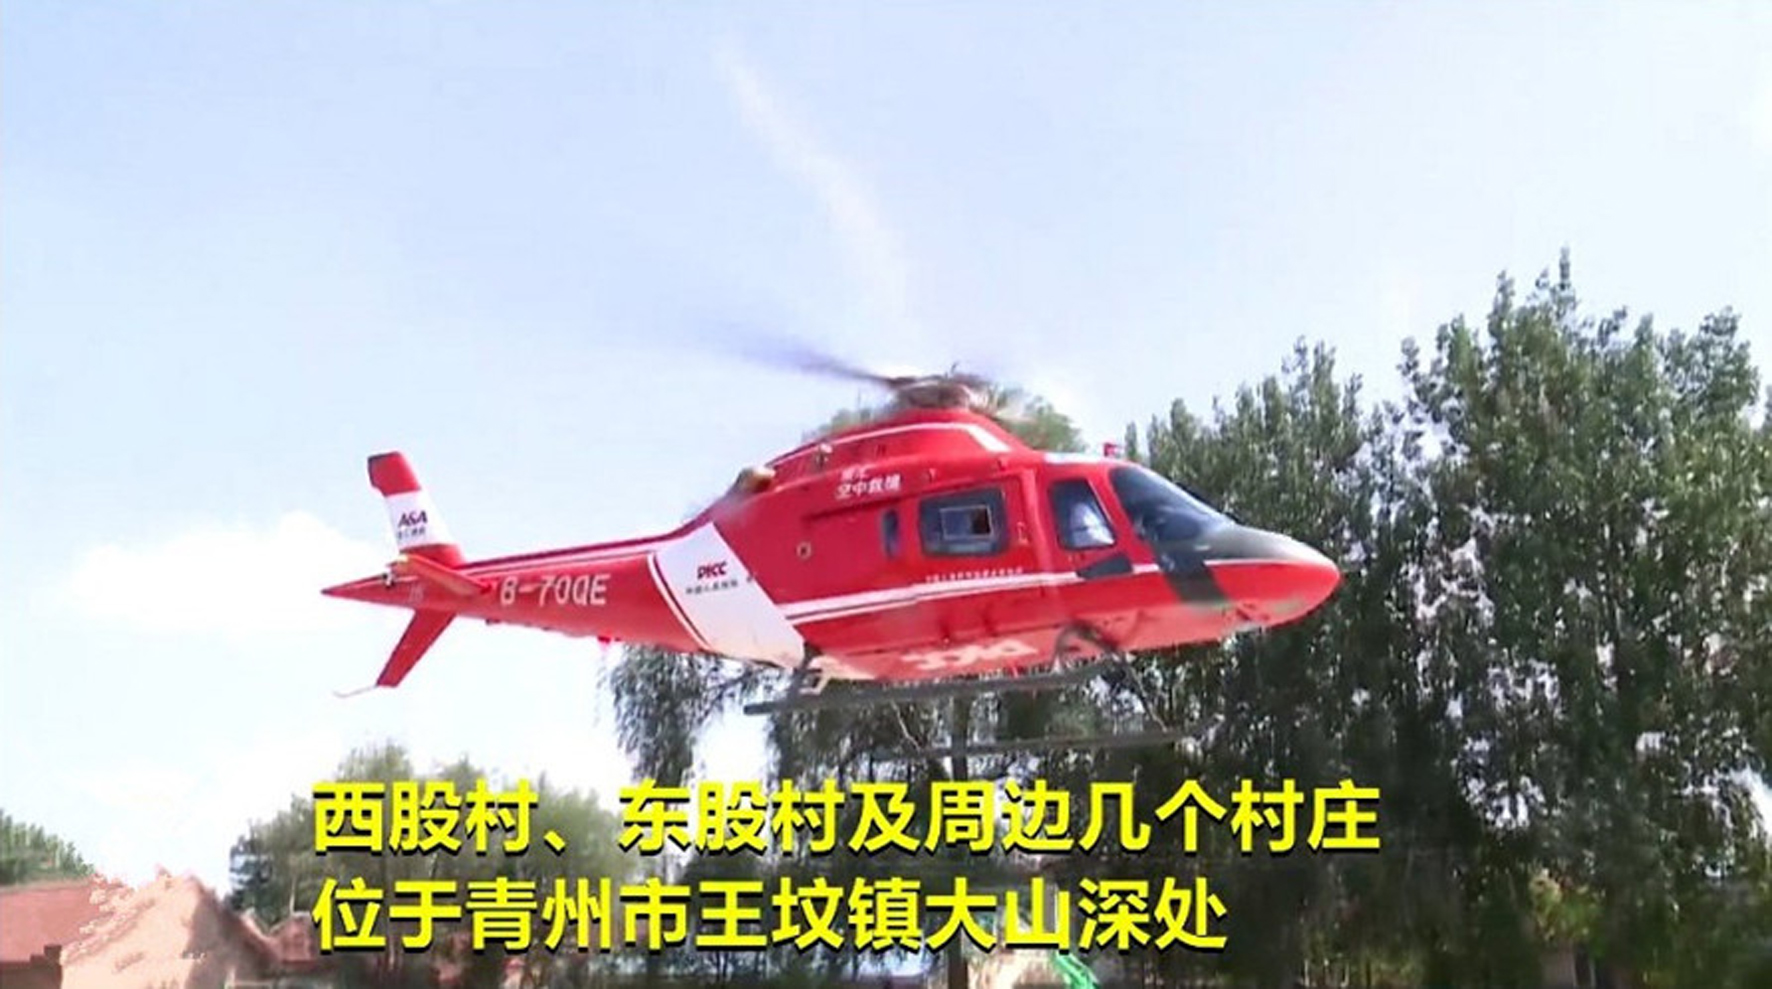 中国人保直升机再出击,救援物资顺利投放灾区